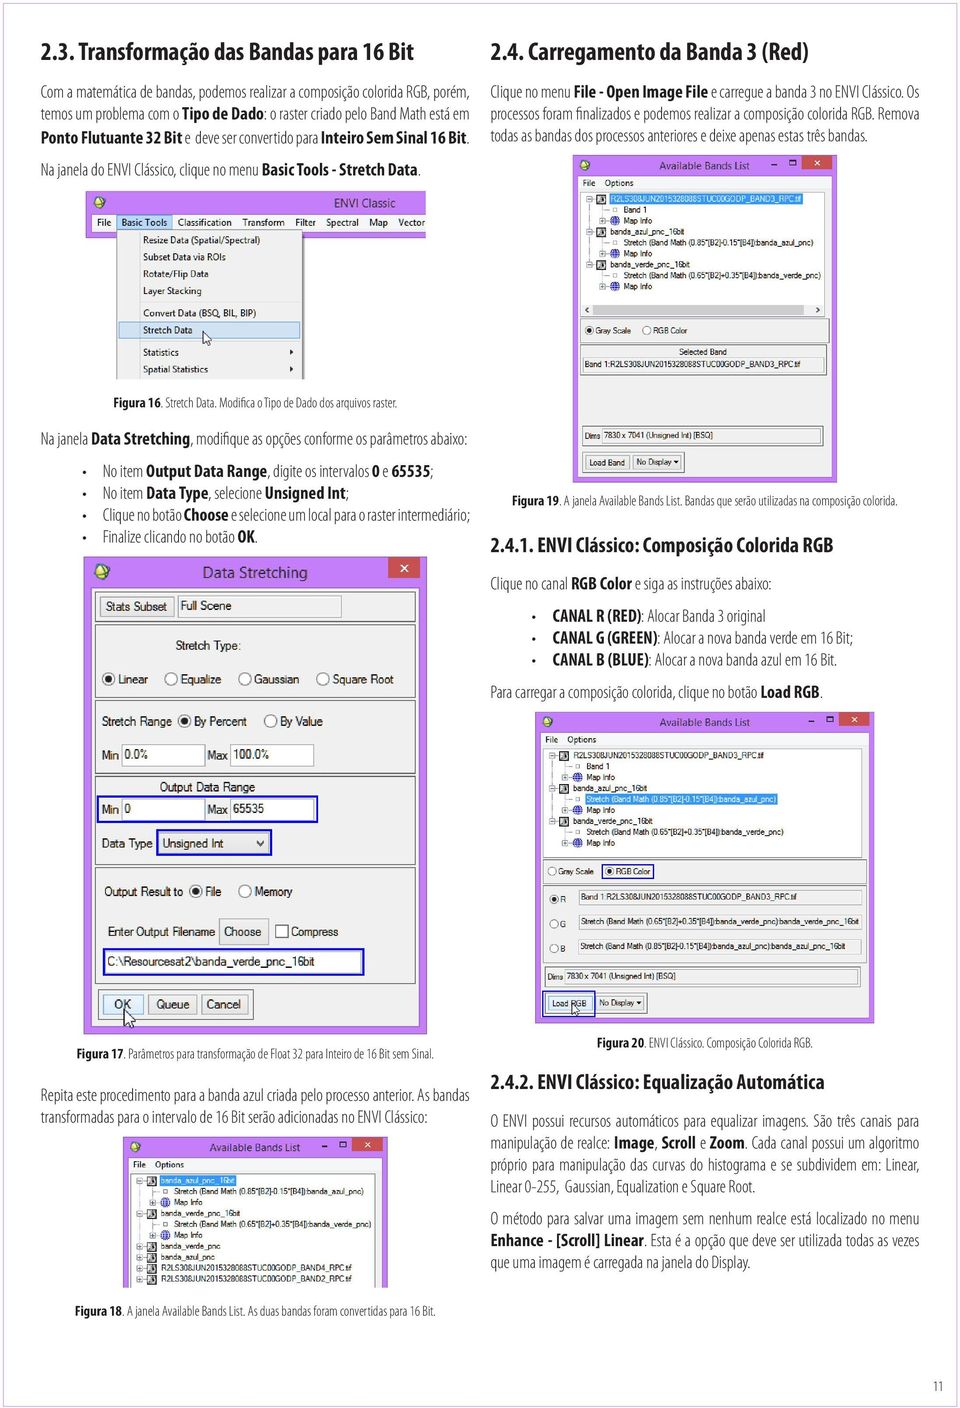 Carregamento da Banda 3 (Red) Clique no menu File - Open Image File e carregue a banda 3 no ENVI Clássico. Os processos foram finalizados e podemos realizar a composição colorida RGB.